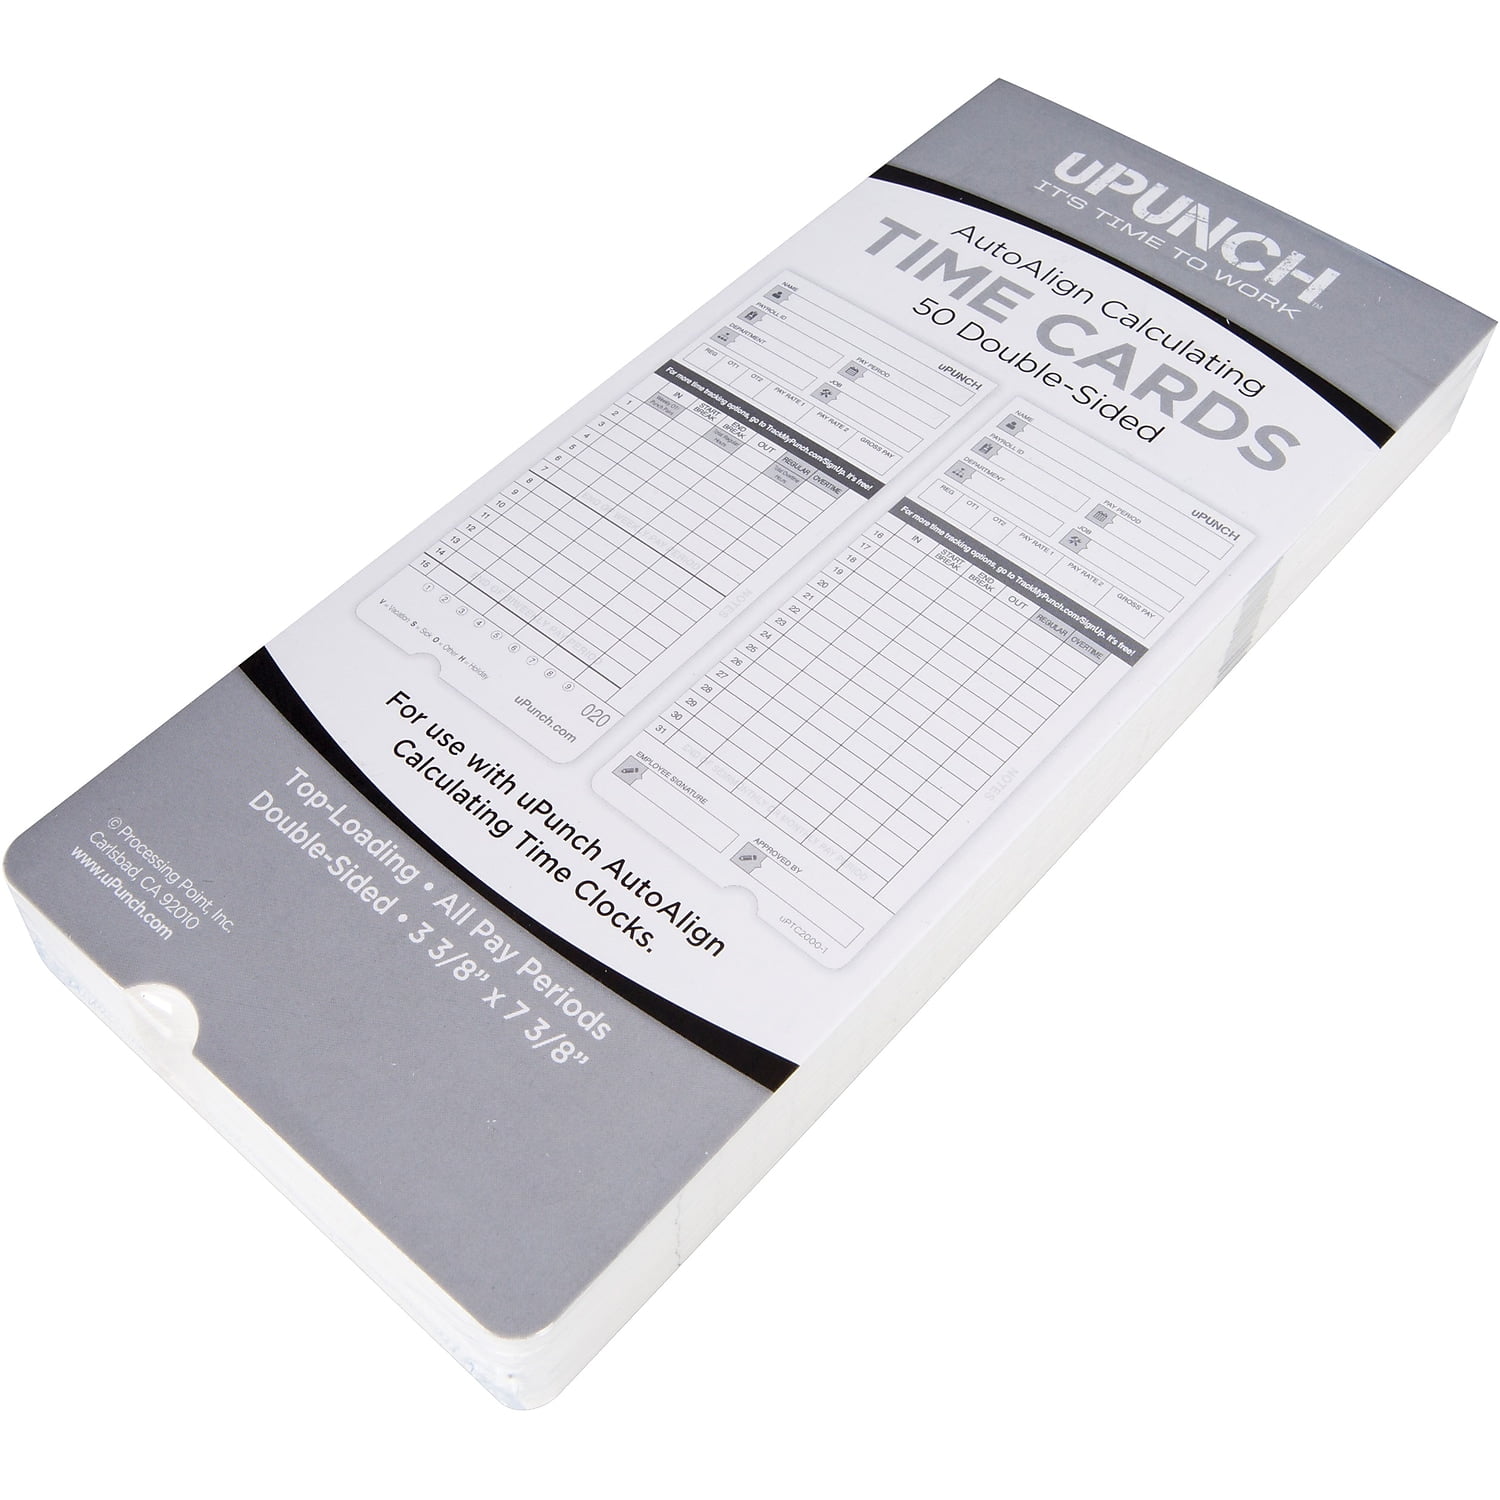 uPunch Starter Time Clock Bundle W 100 Cards 1 Card Rack Ribbon & 2 Keys HN1500 for sale online 